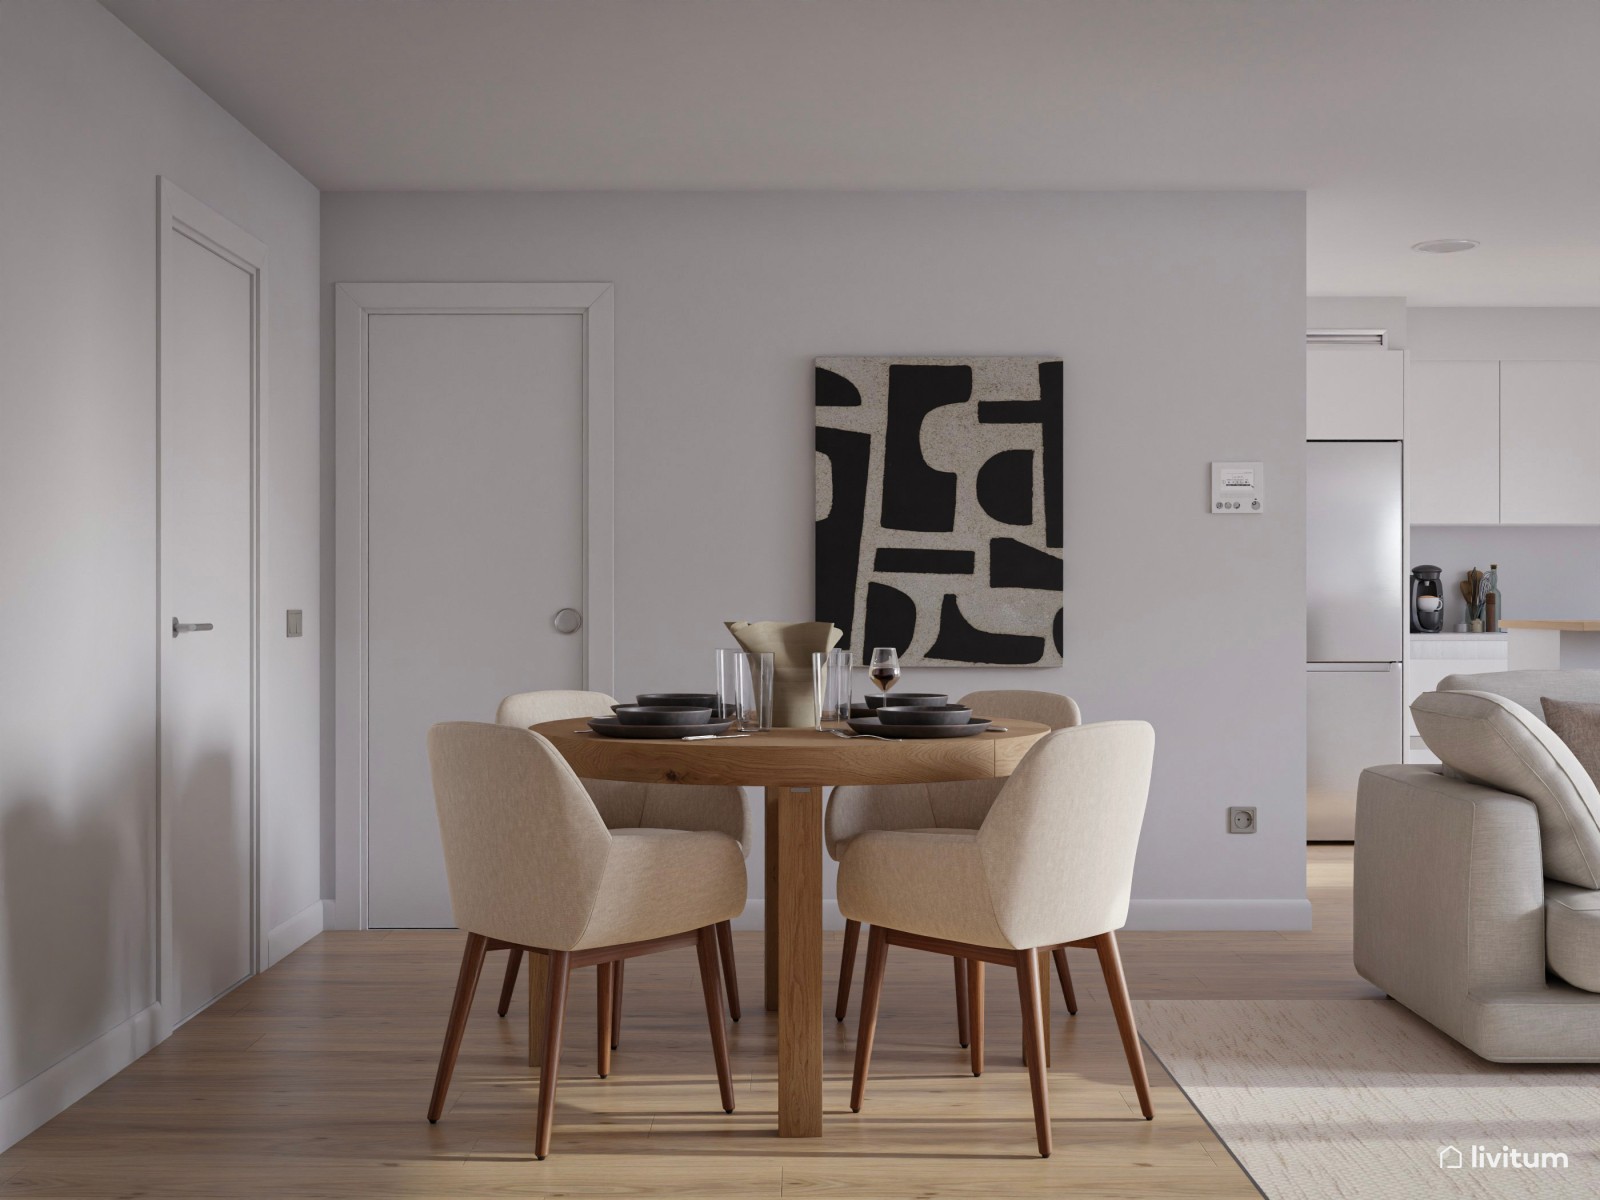 Salón comedor moderno y minimalista en blanco y madera 